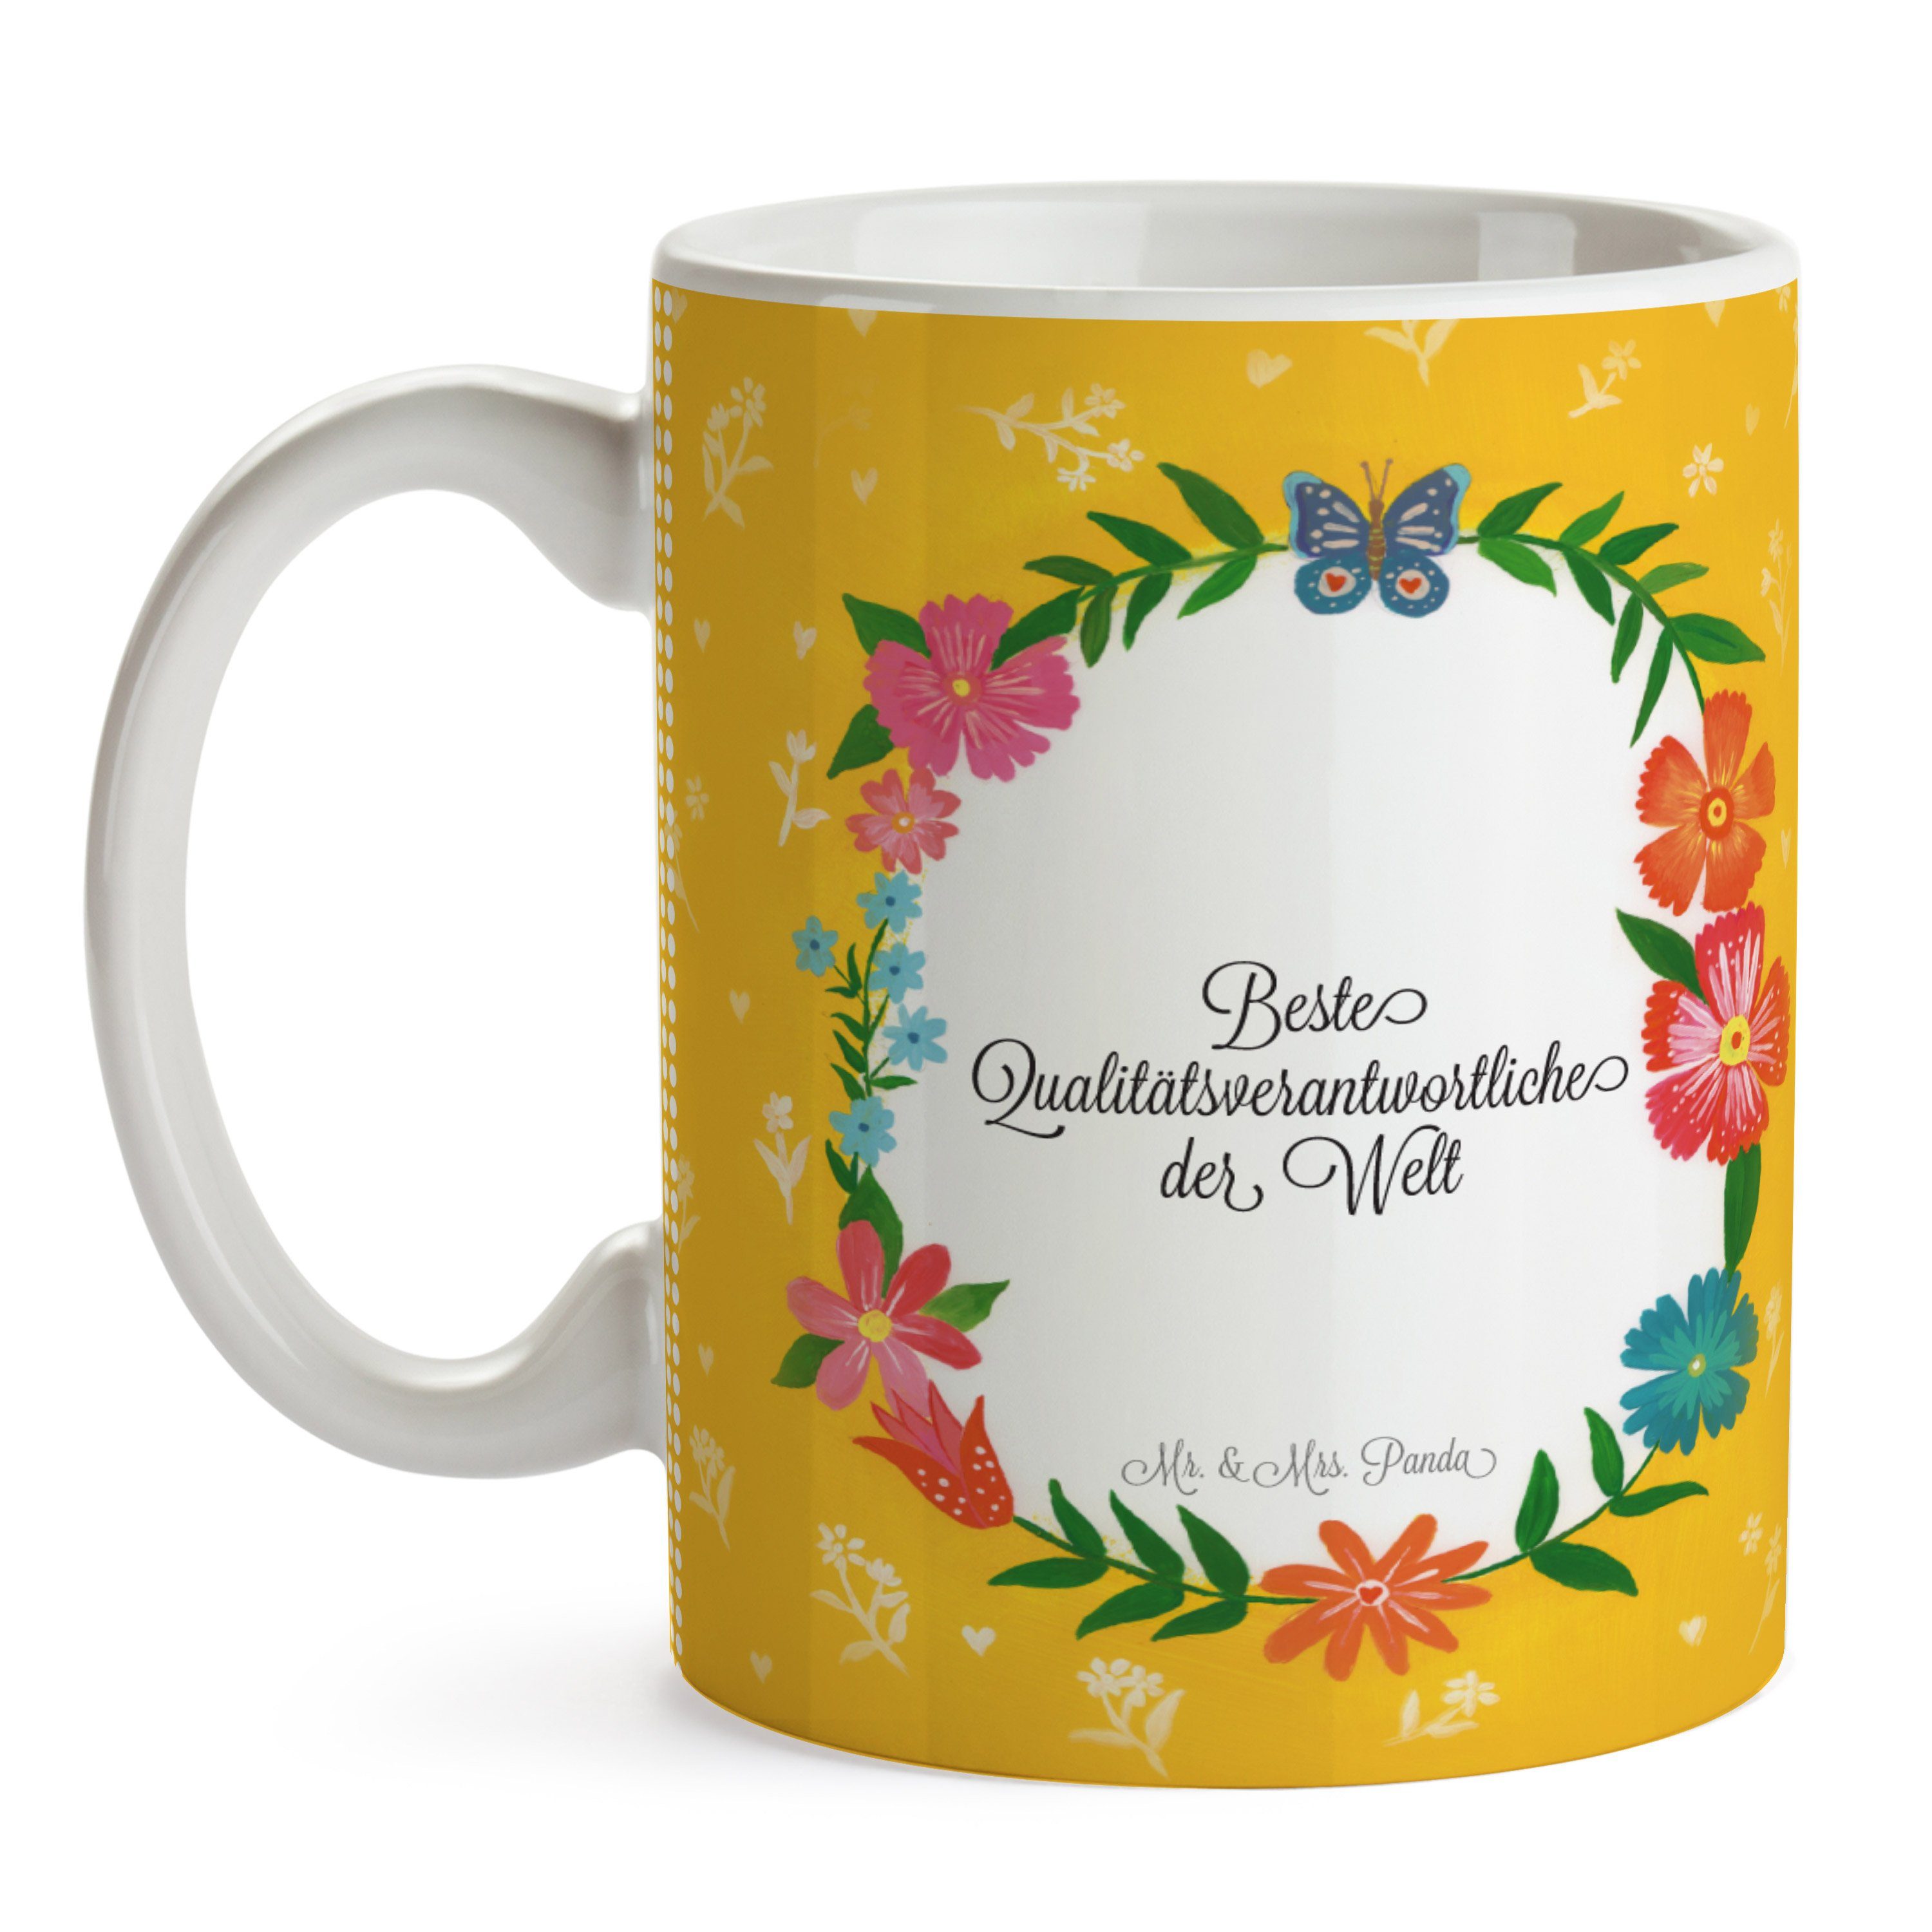 Mr. & Mrs. Panda Teebecher, Keramik Geschenk, Qualitätsverantwortliche - Tee, Tasse Berufsausbildung